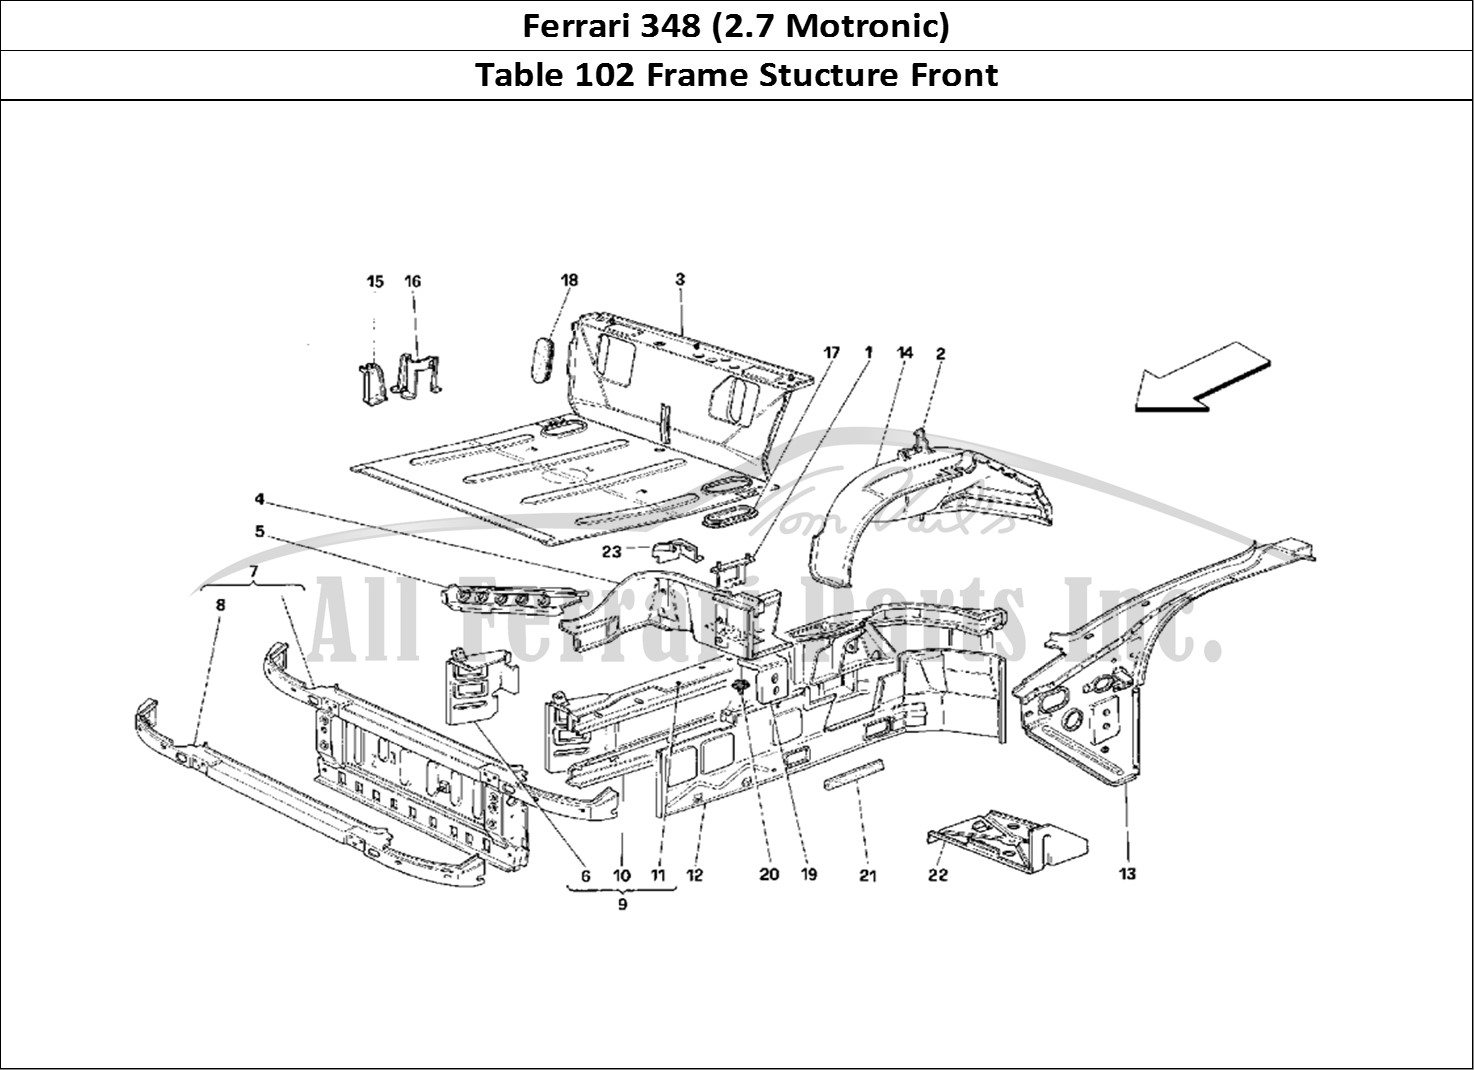 Ferrari Parts Ferrari 348 (2.7 Motronic) Page 102 Front Part Structures